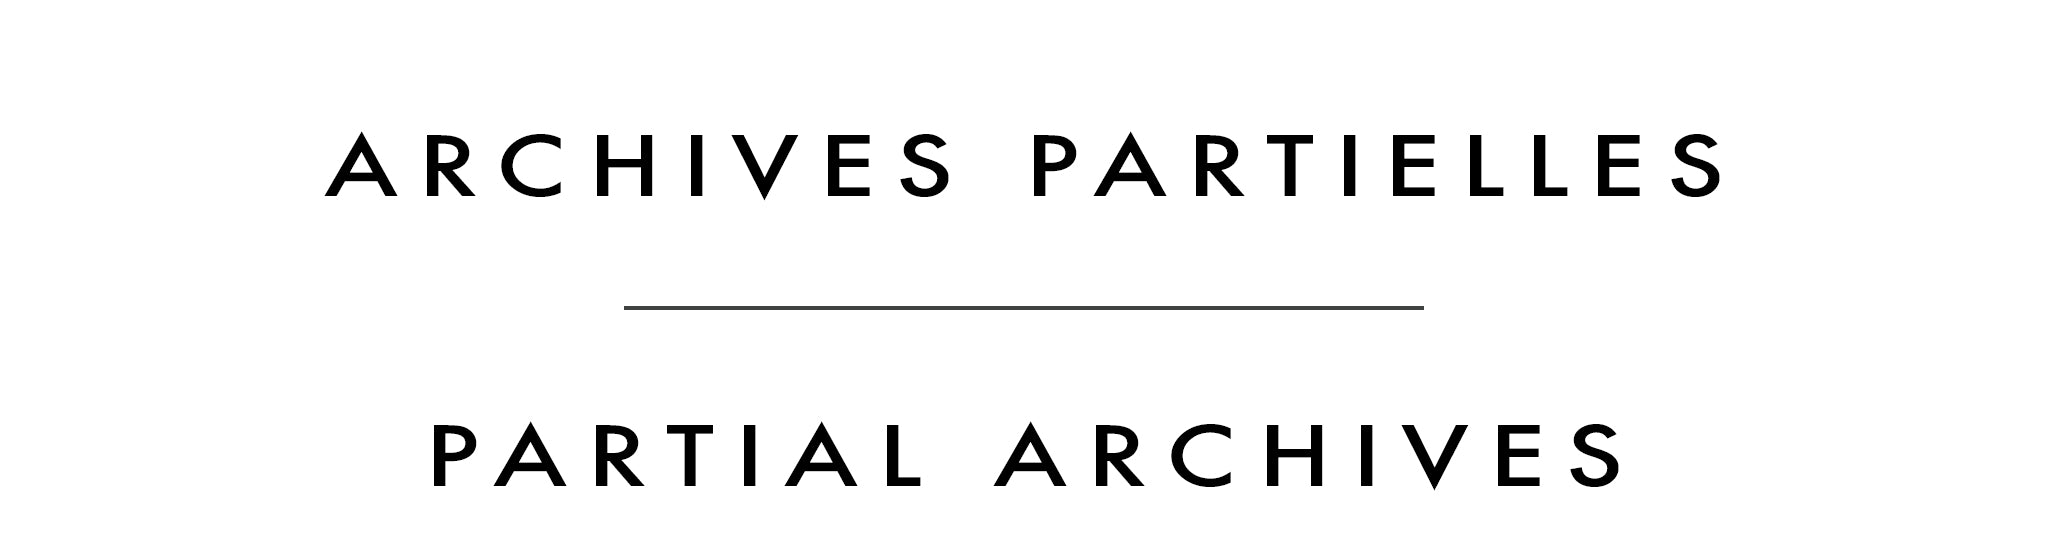 Archives partielles | Partial Archives | Robert Savignac